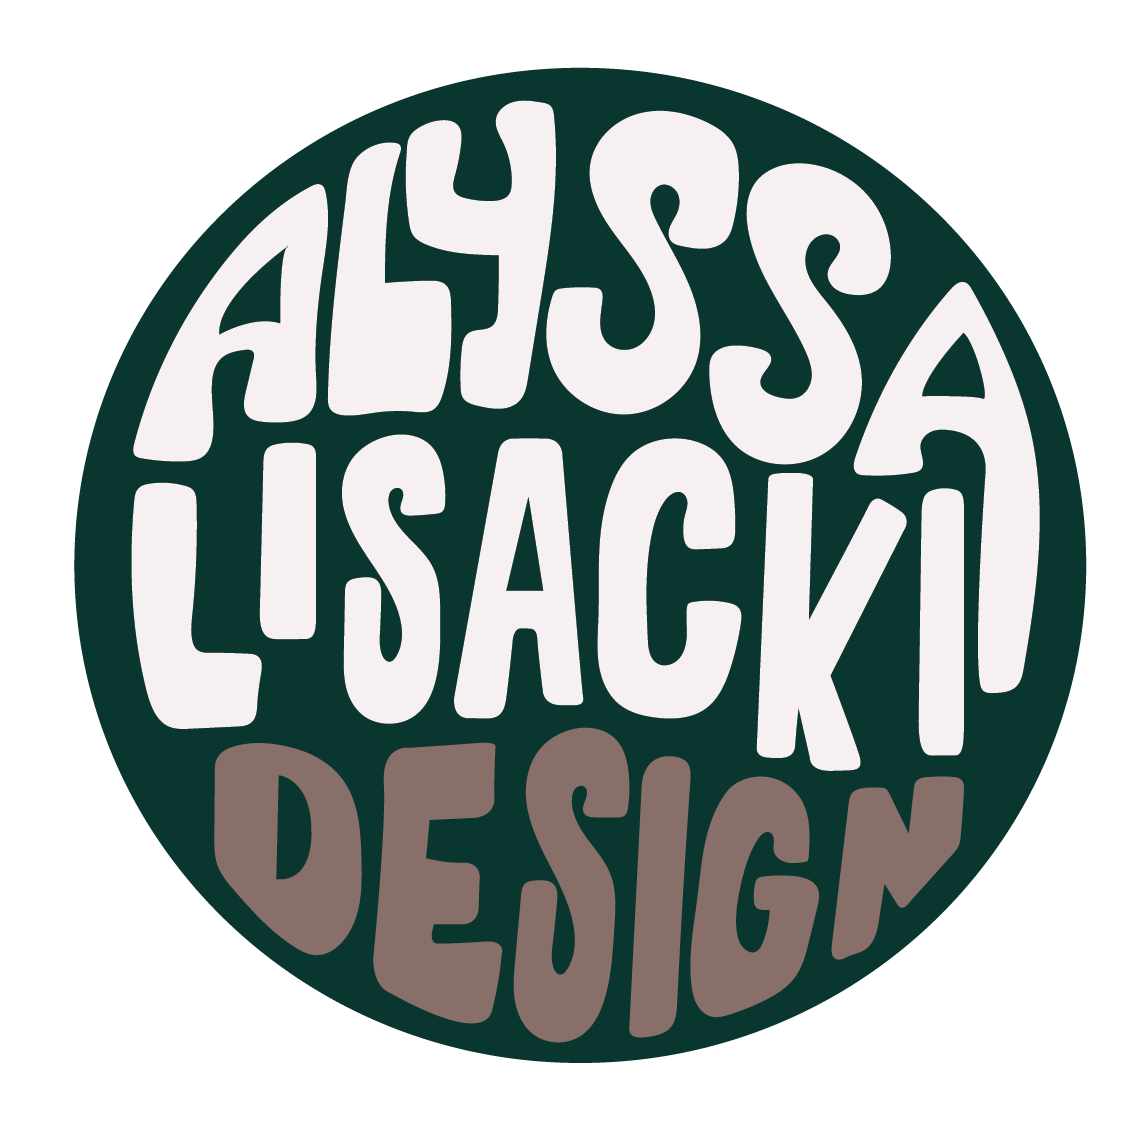 Alyssa Lisacki